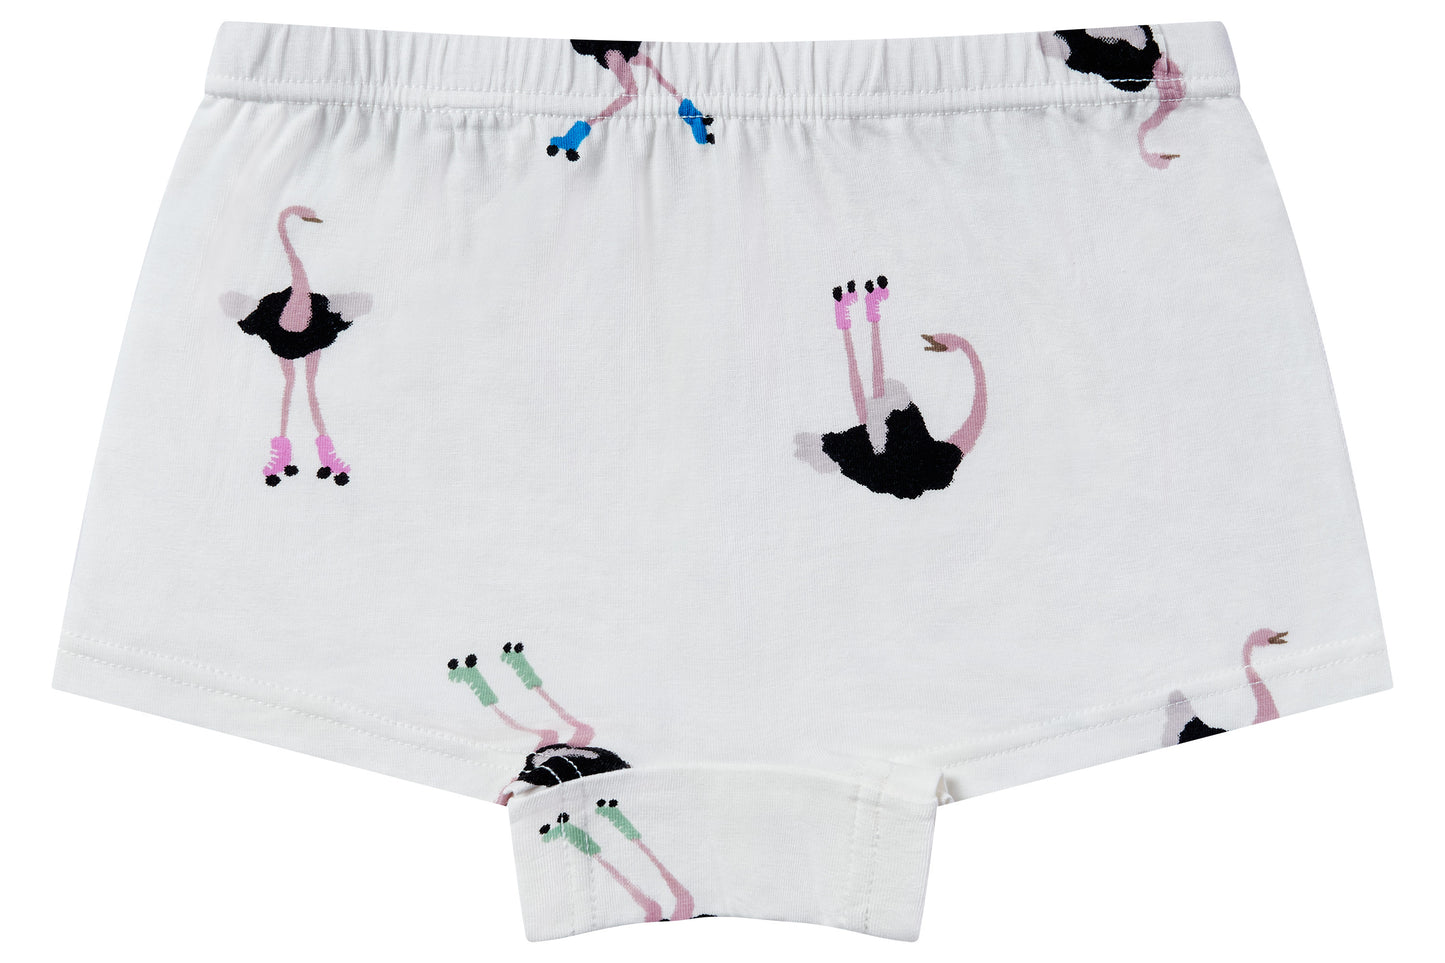 Girls Boy Short Underwear (Bamboo, 2 Pack) - Tall Birds – Nest Designs